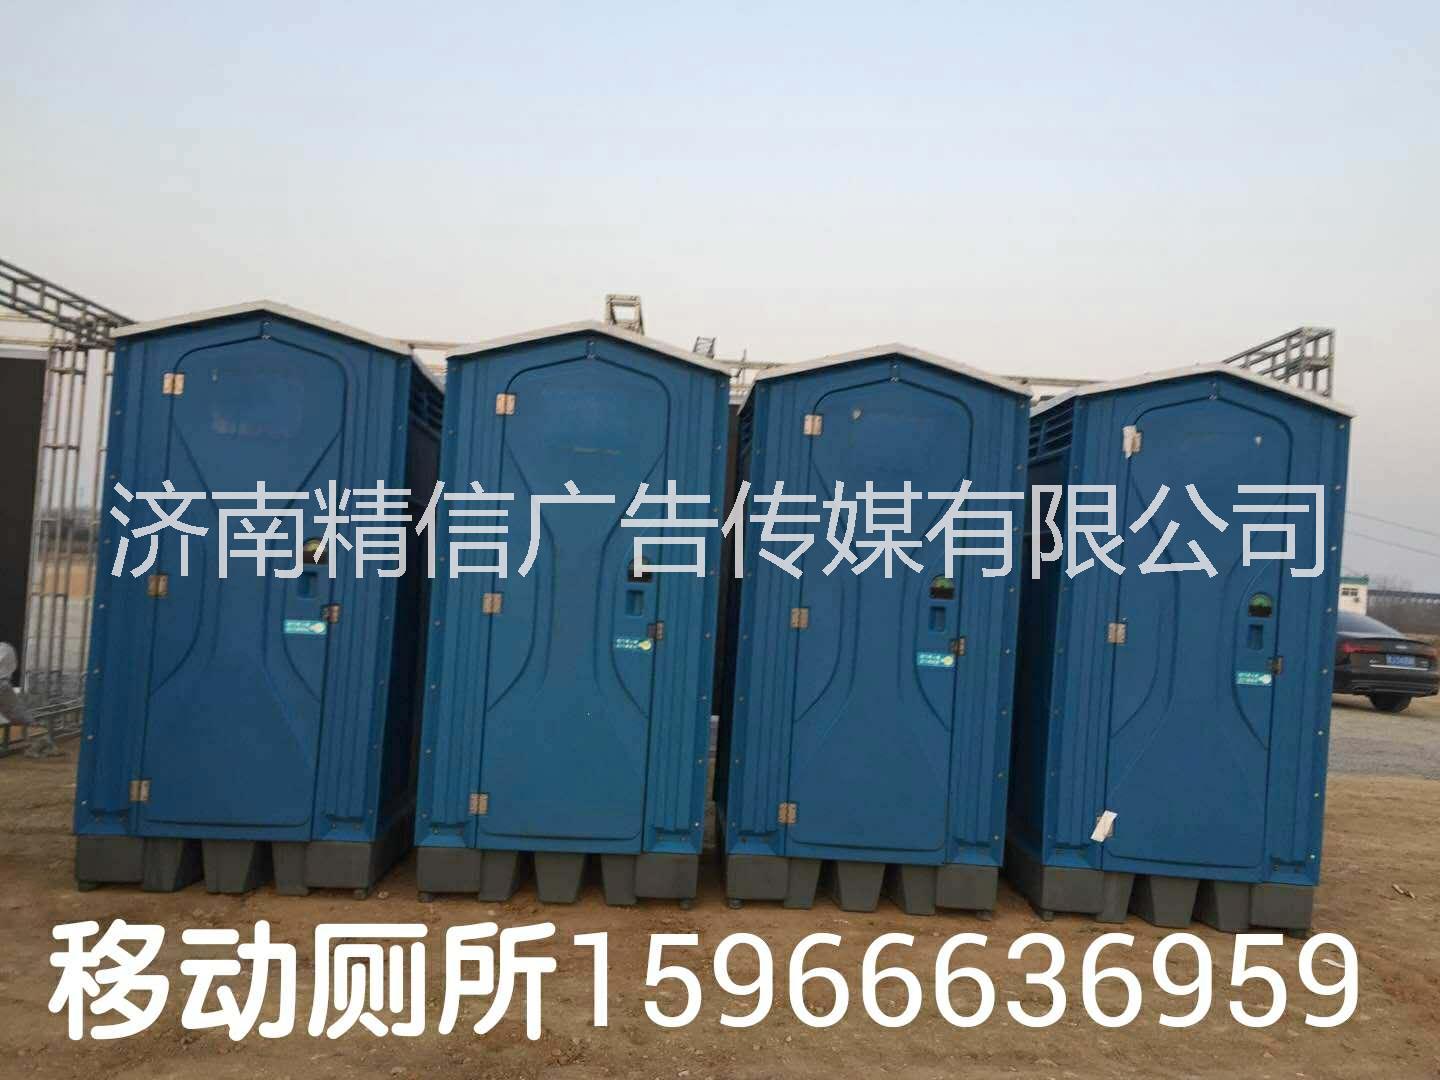 济南出租厕所 移动卫生间租赁